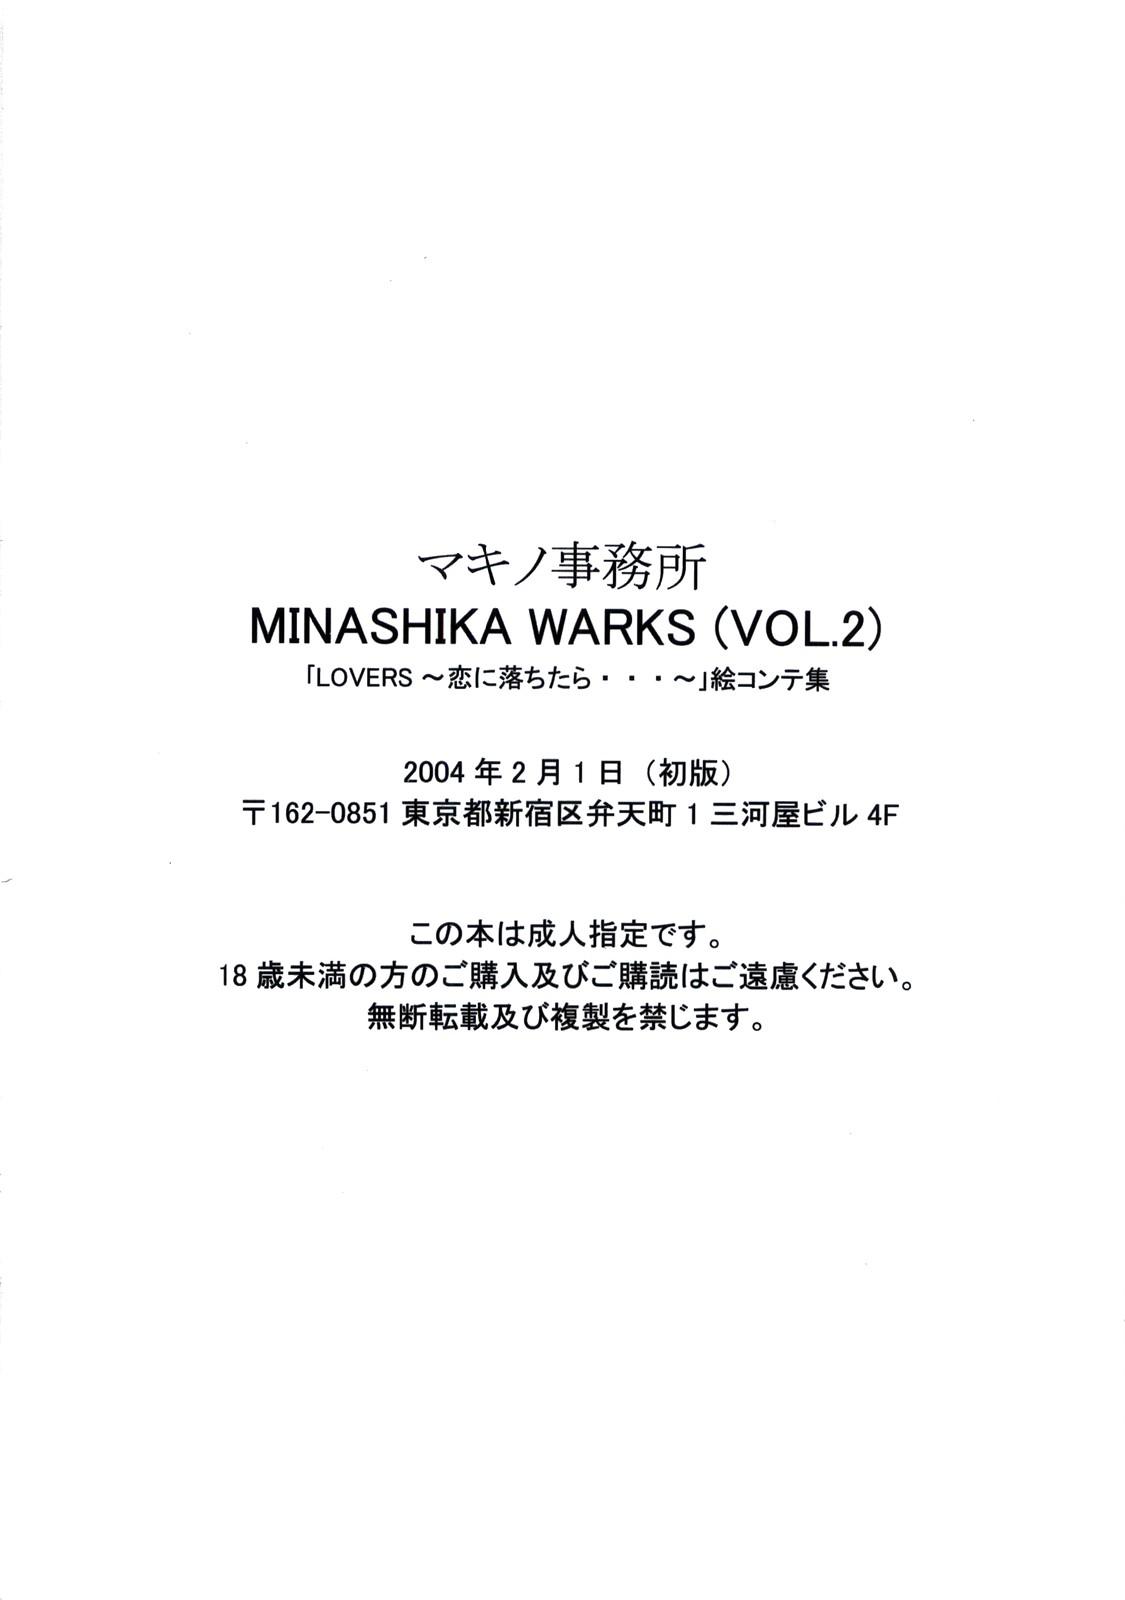 [Makino Jimusho (Taki Minashika)] Minasika Works Vol.2 "LOVERS ~Koi ni Ochitara...~" Ekonte-shuu 76